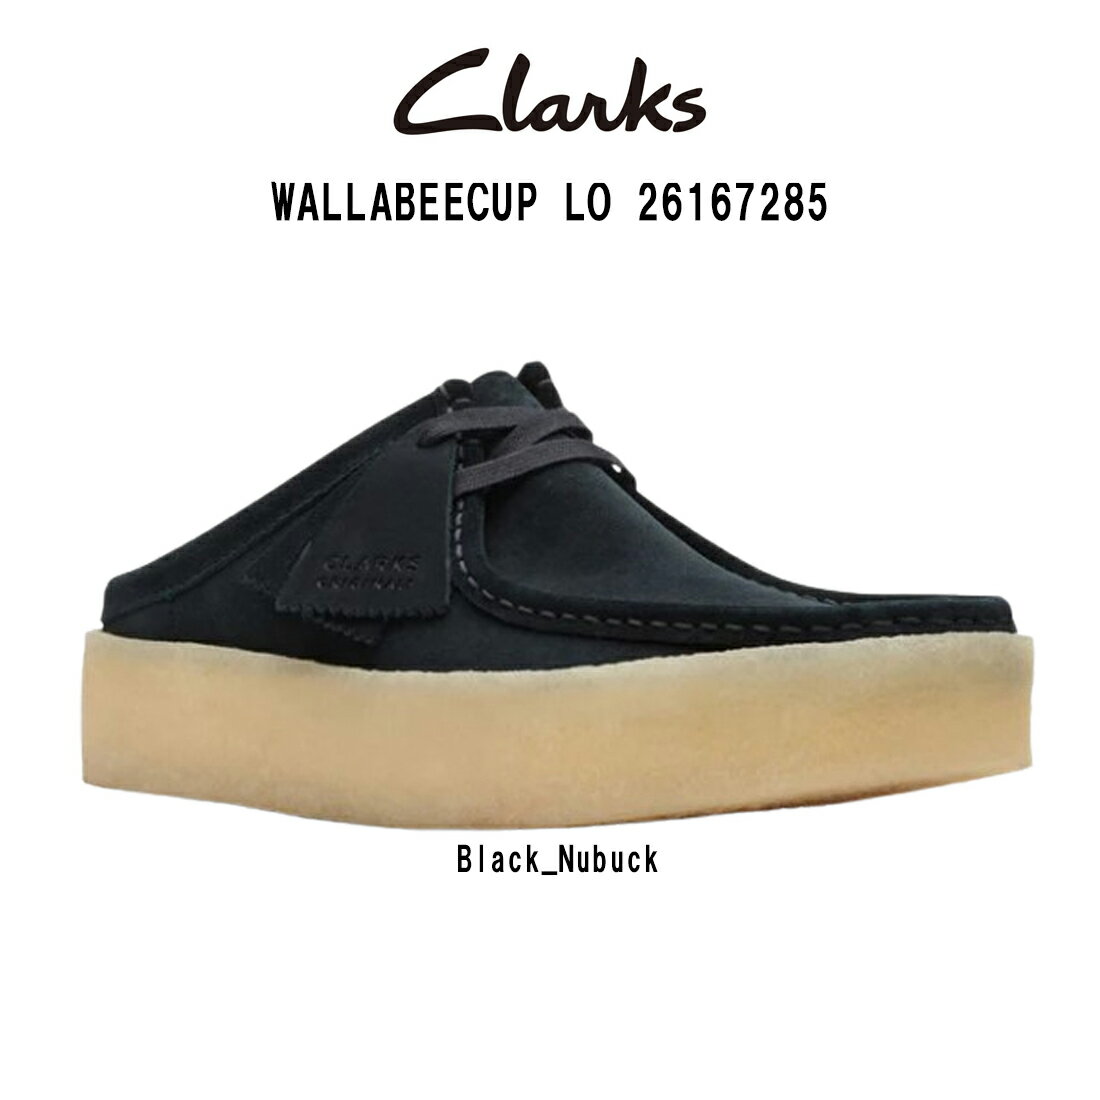 CLARKS(クラークス)ワラビー カップ ロー ミュール シューズ ブラック スエード カジュアル メンズ 男性用 WALLABEECUP LO 26167285